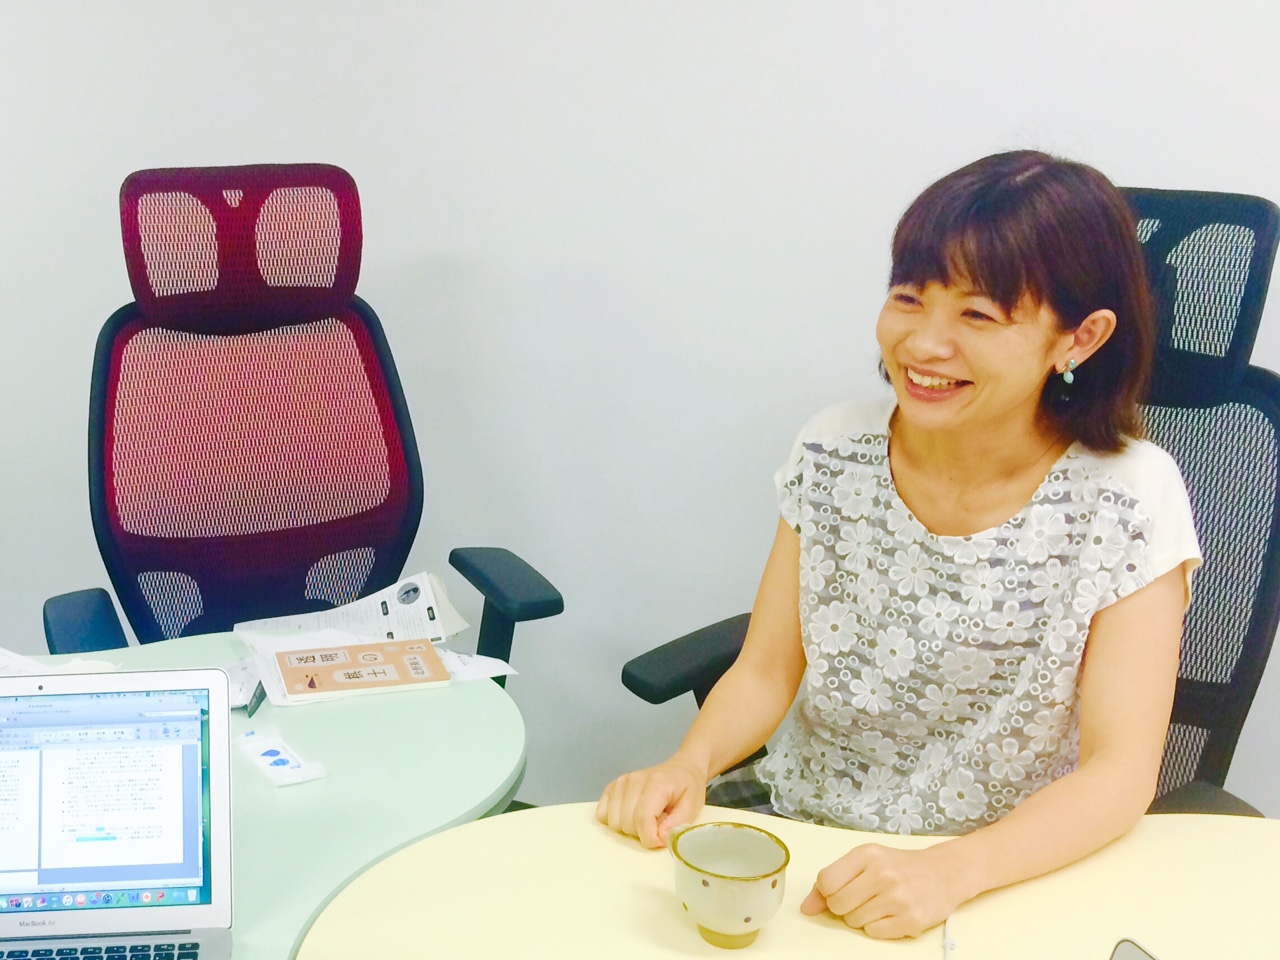 Case #4: I-tsu-tsu Co. Ltd. Director, Ms. Hisae Ozaki